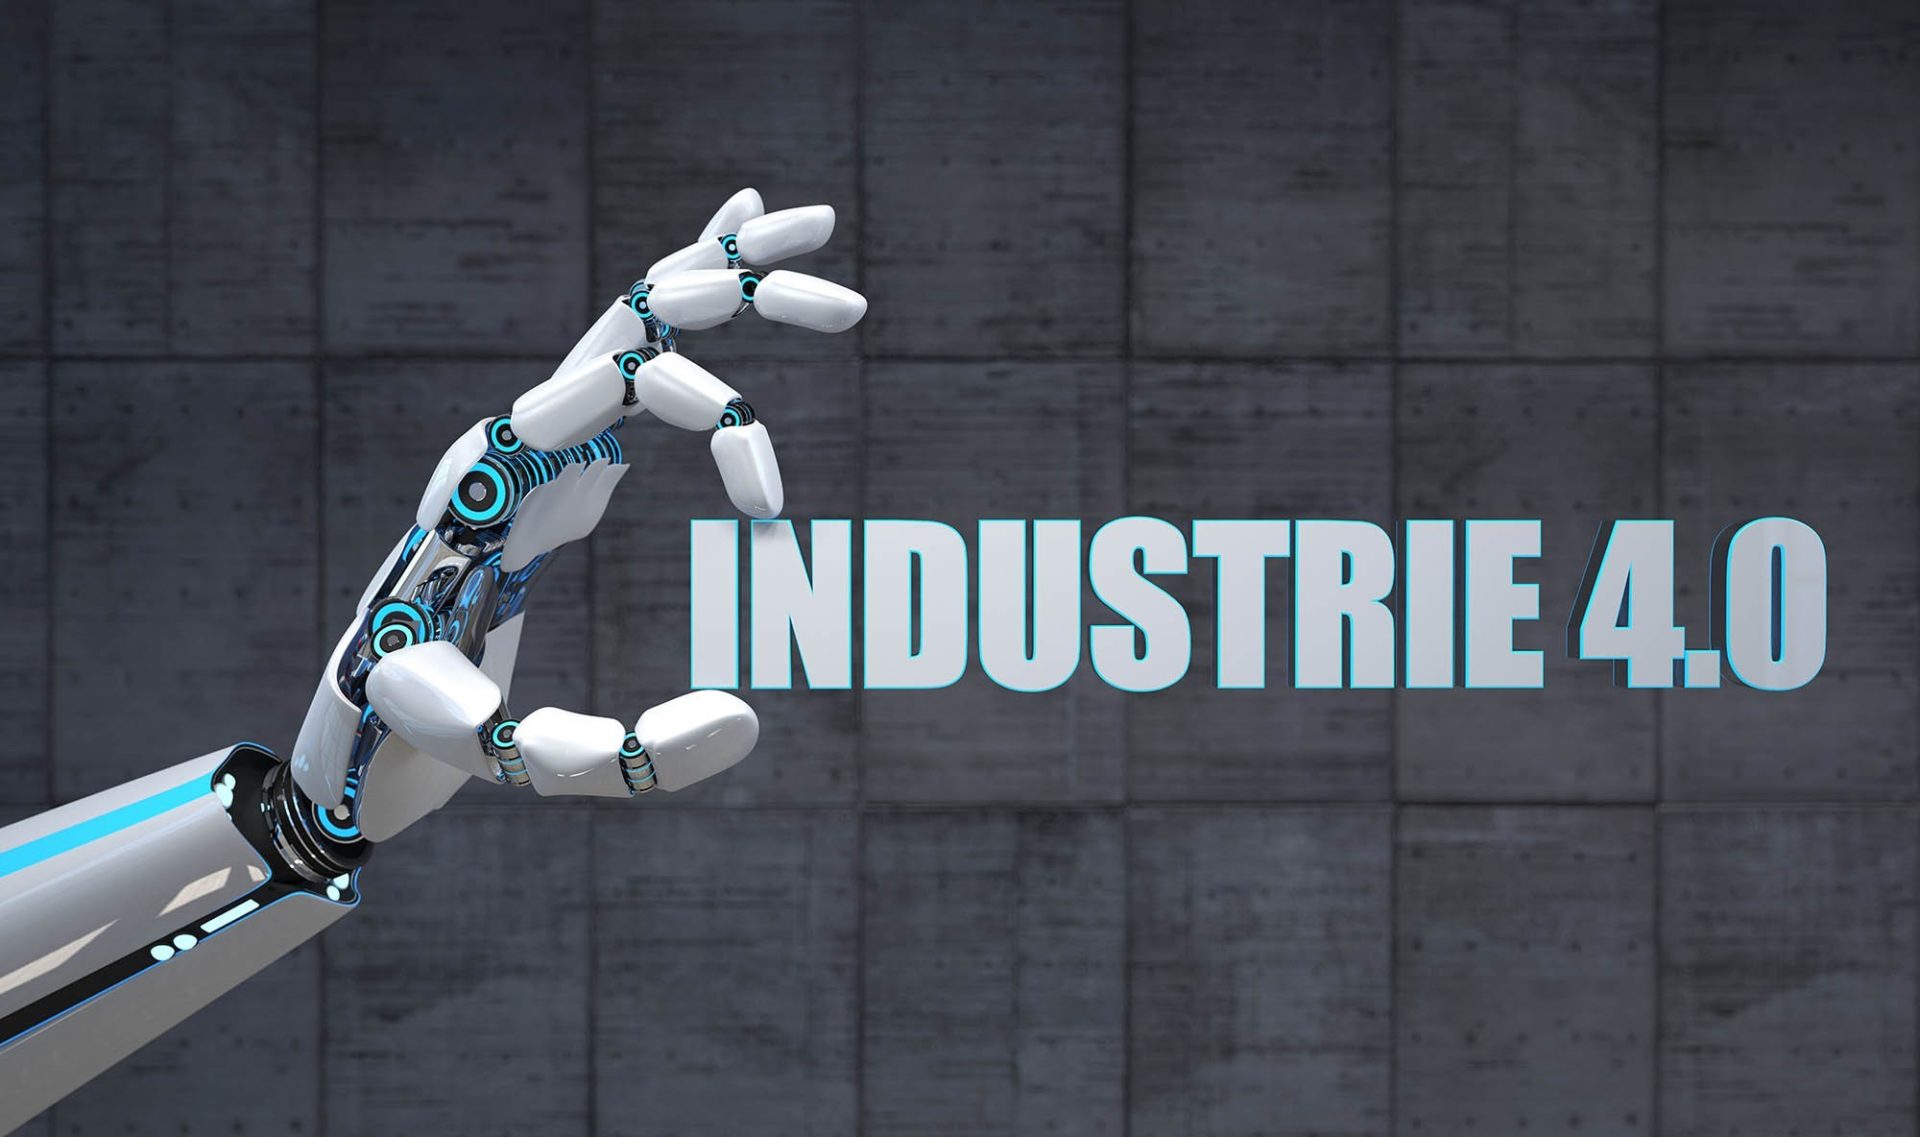 Robot hand industry 4.0